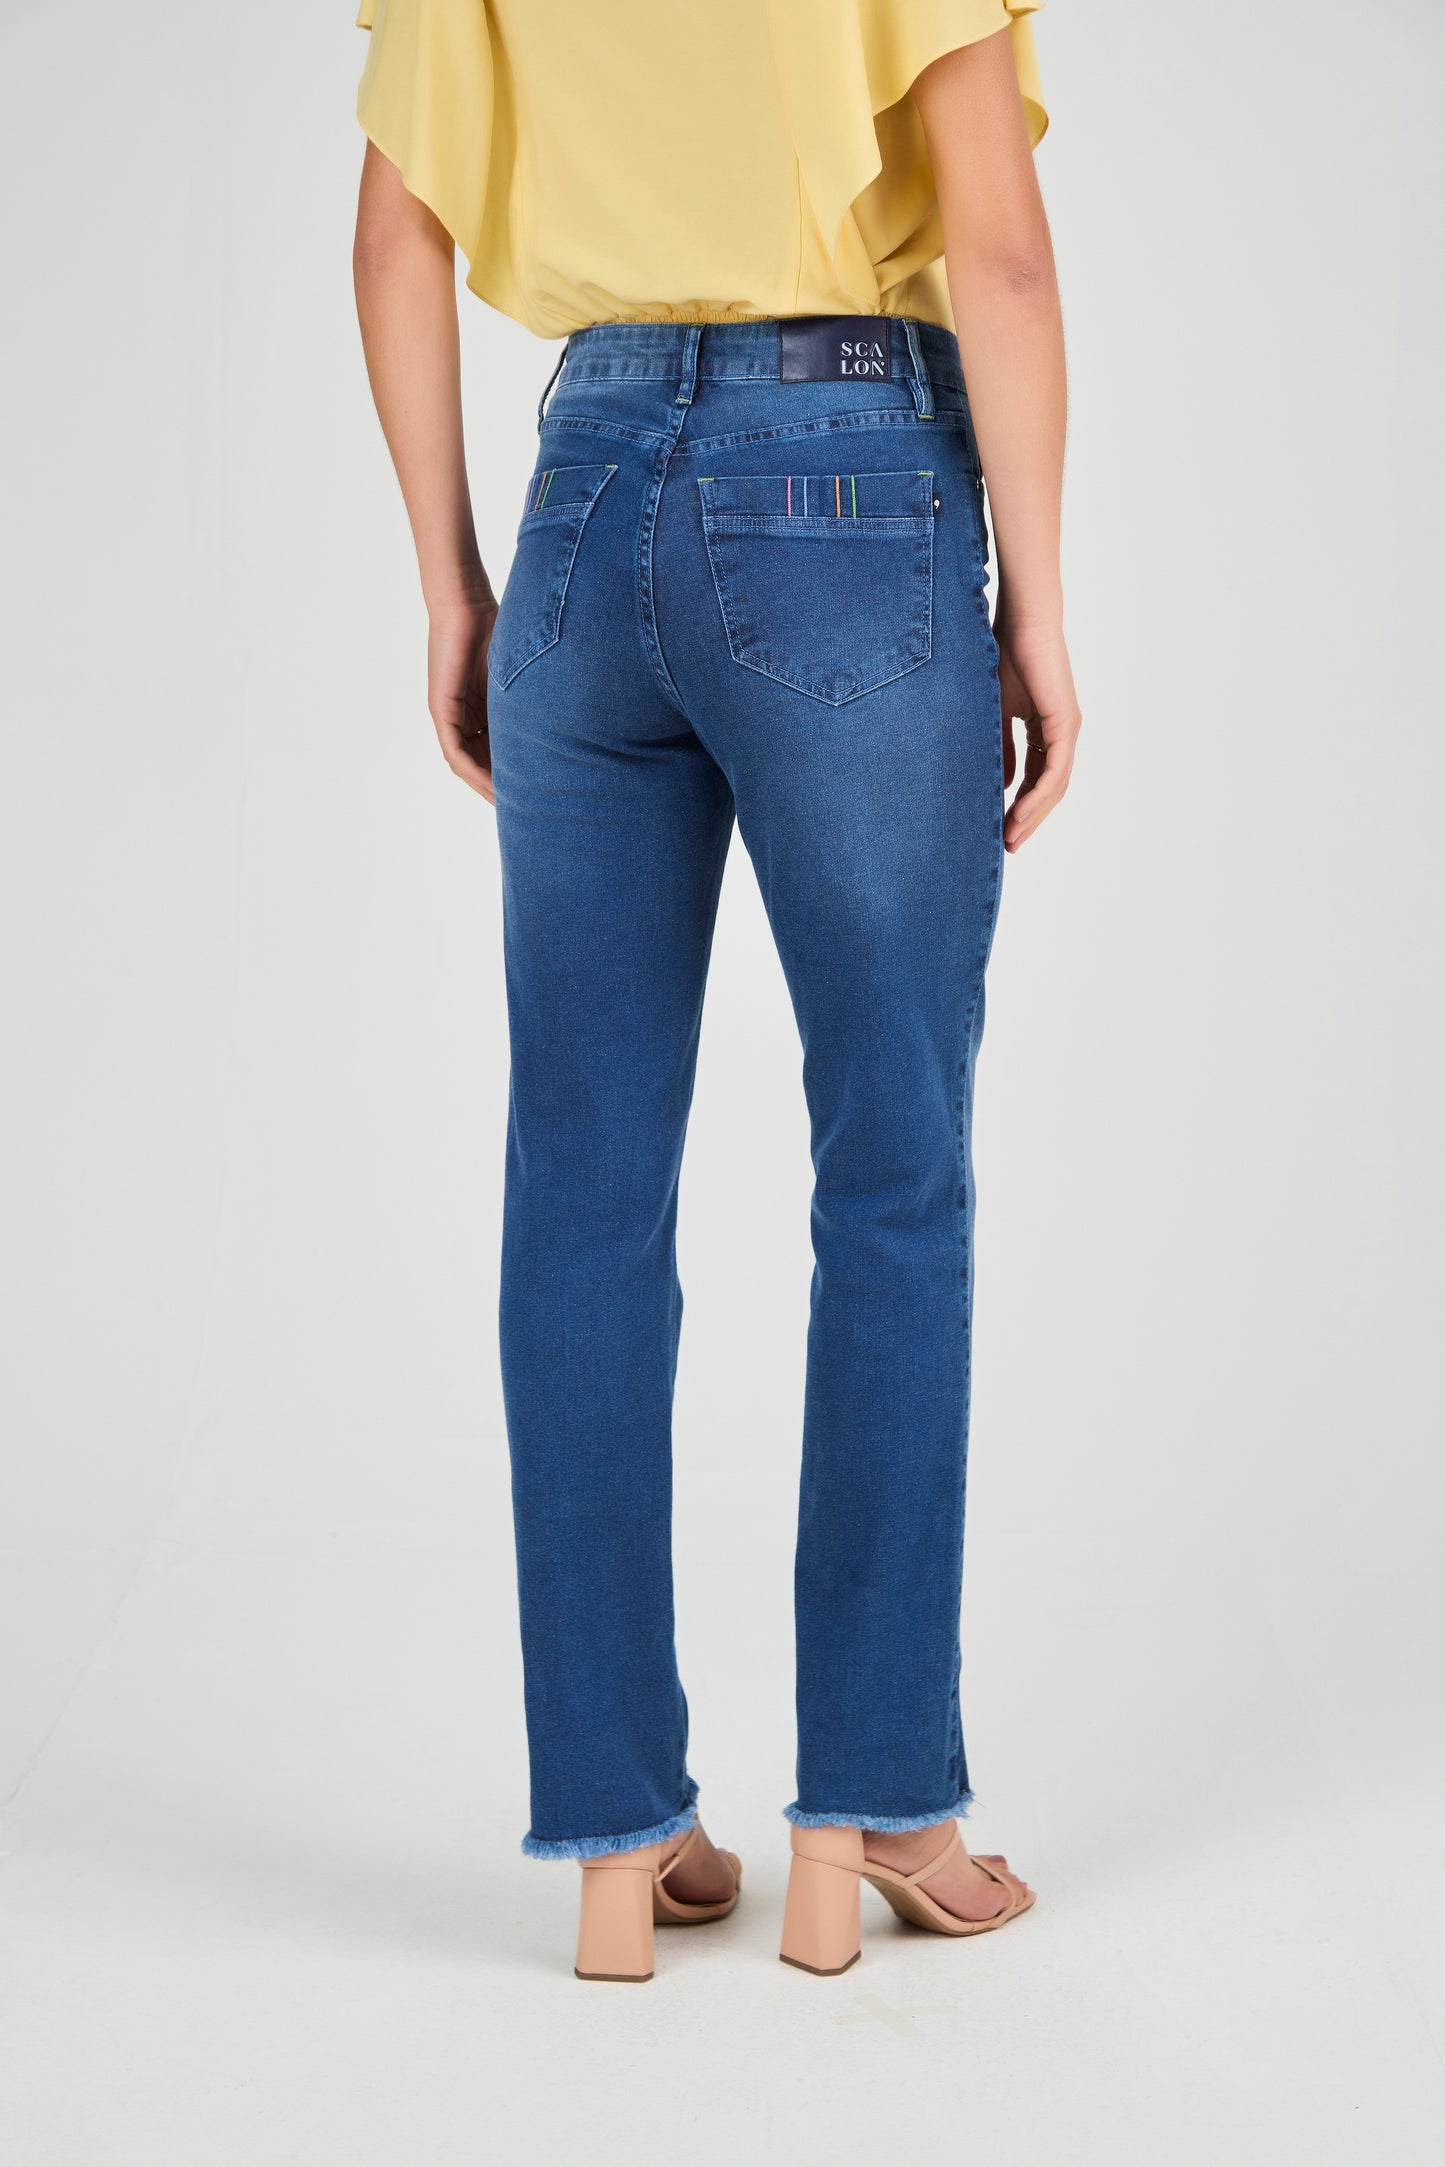 calça jeans reta cintura intermediria com bordado pesponto